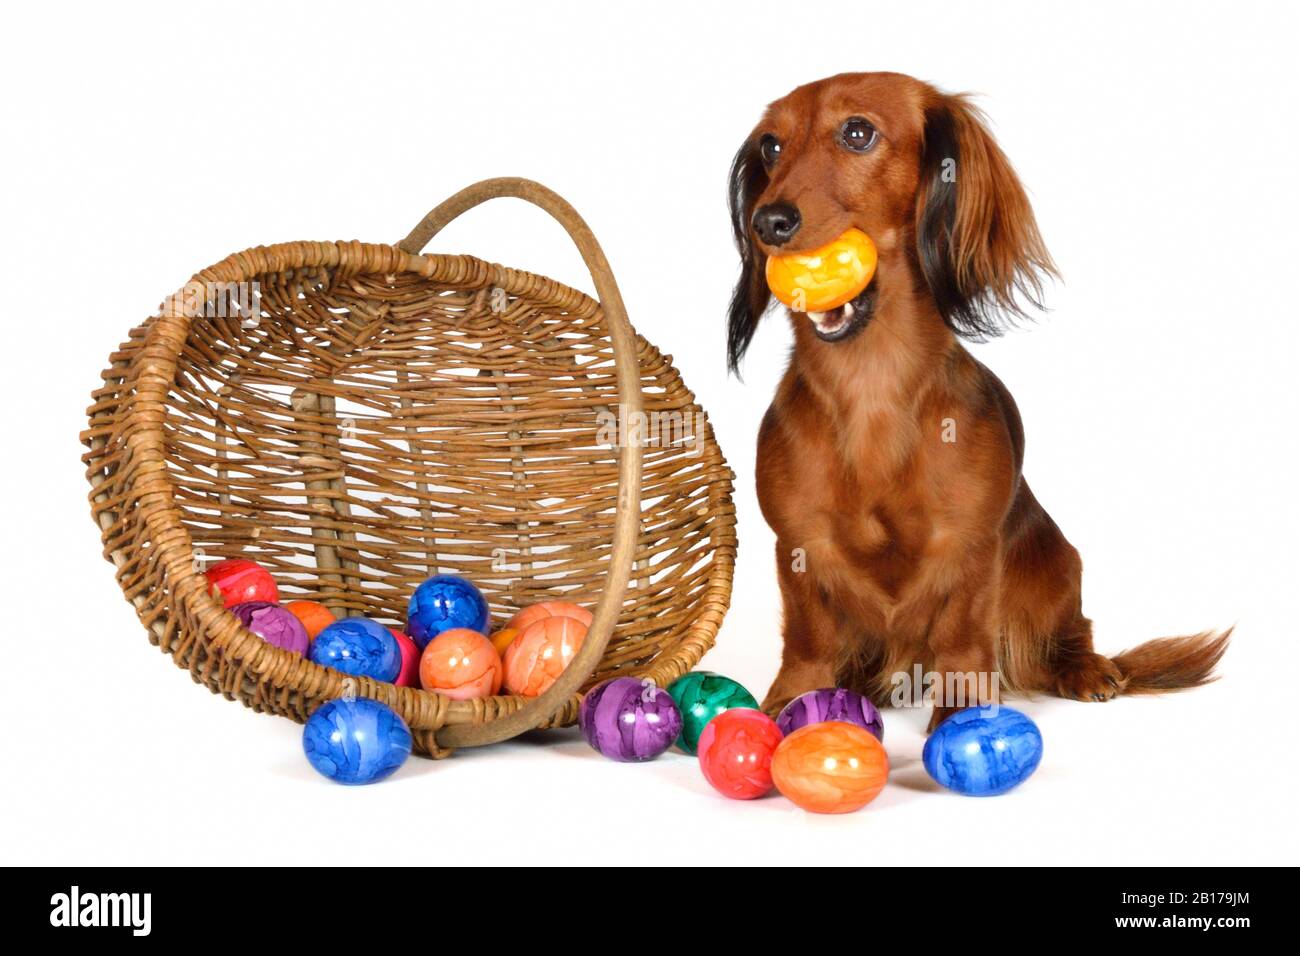 Langhaariger Dachshund, Langhaariger Wursthund, Haushund (Canis lupus f. familiaris), weiblicher Dachshund mit einem Ei in der Schnauze neben einem Korb mit farbigen Eiern sitzend Stockfoto